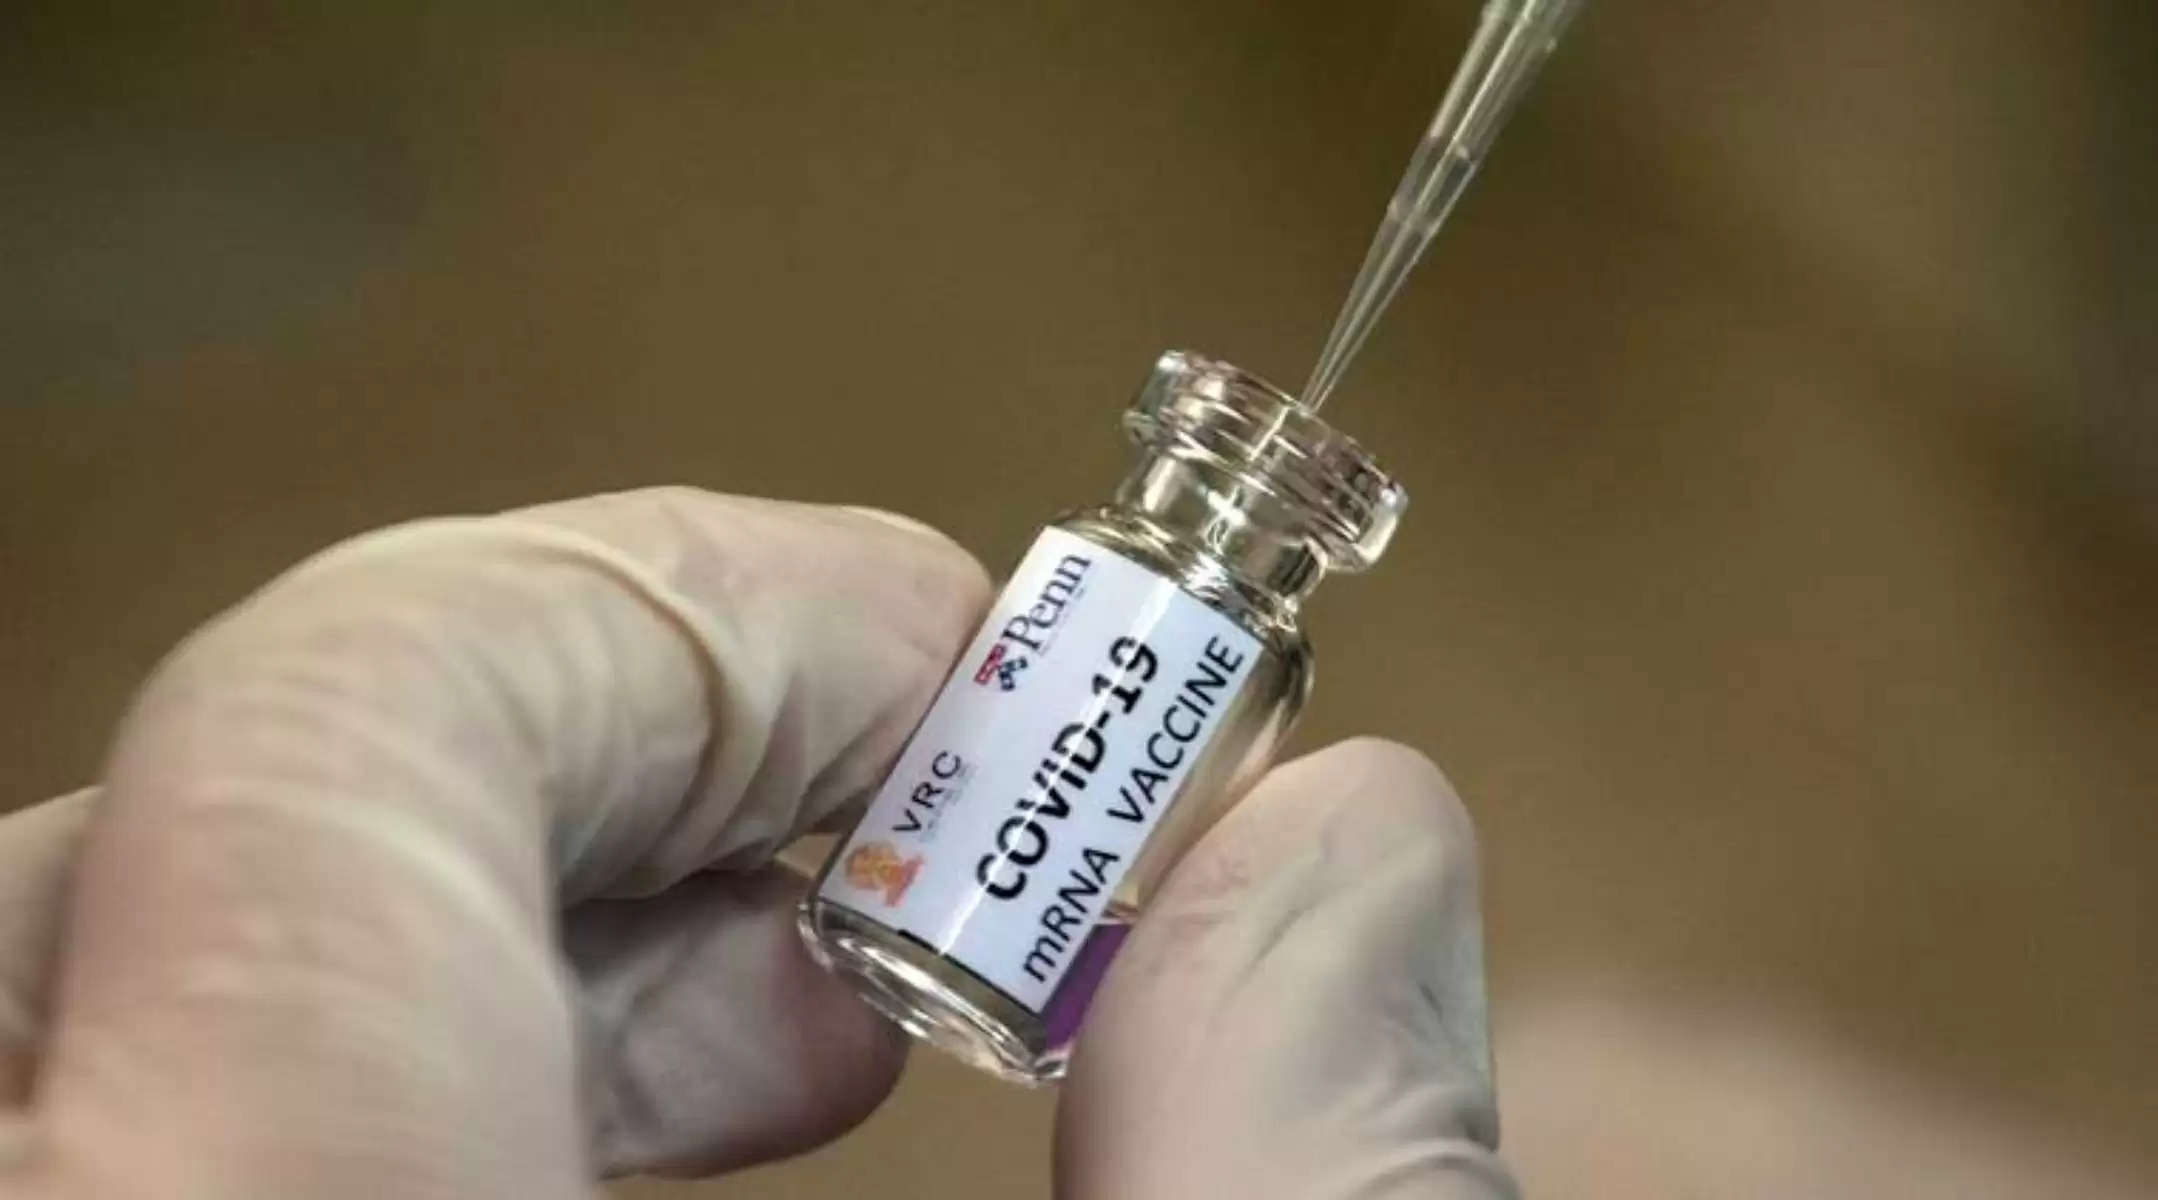 Vaccination Maharashtra:18 से अधिक उम्र के लोगो के लिए खरीदी गयी वैक्सीन अब 45 से अधिक के लोगो को दी जाएगी